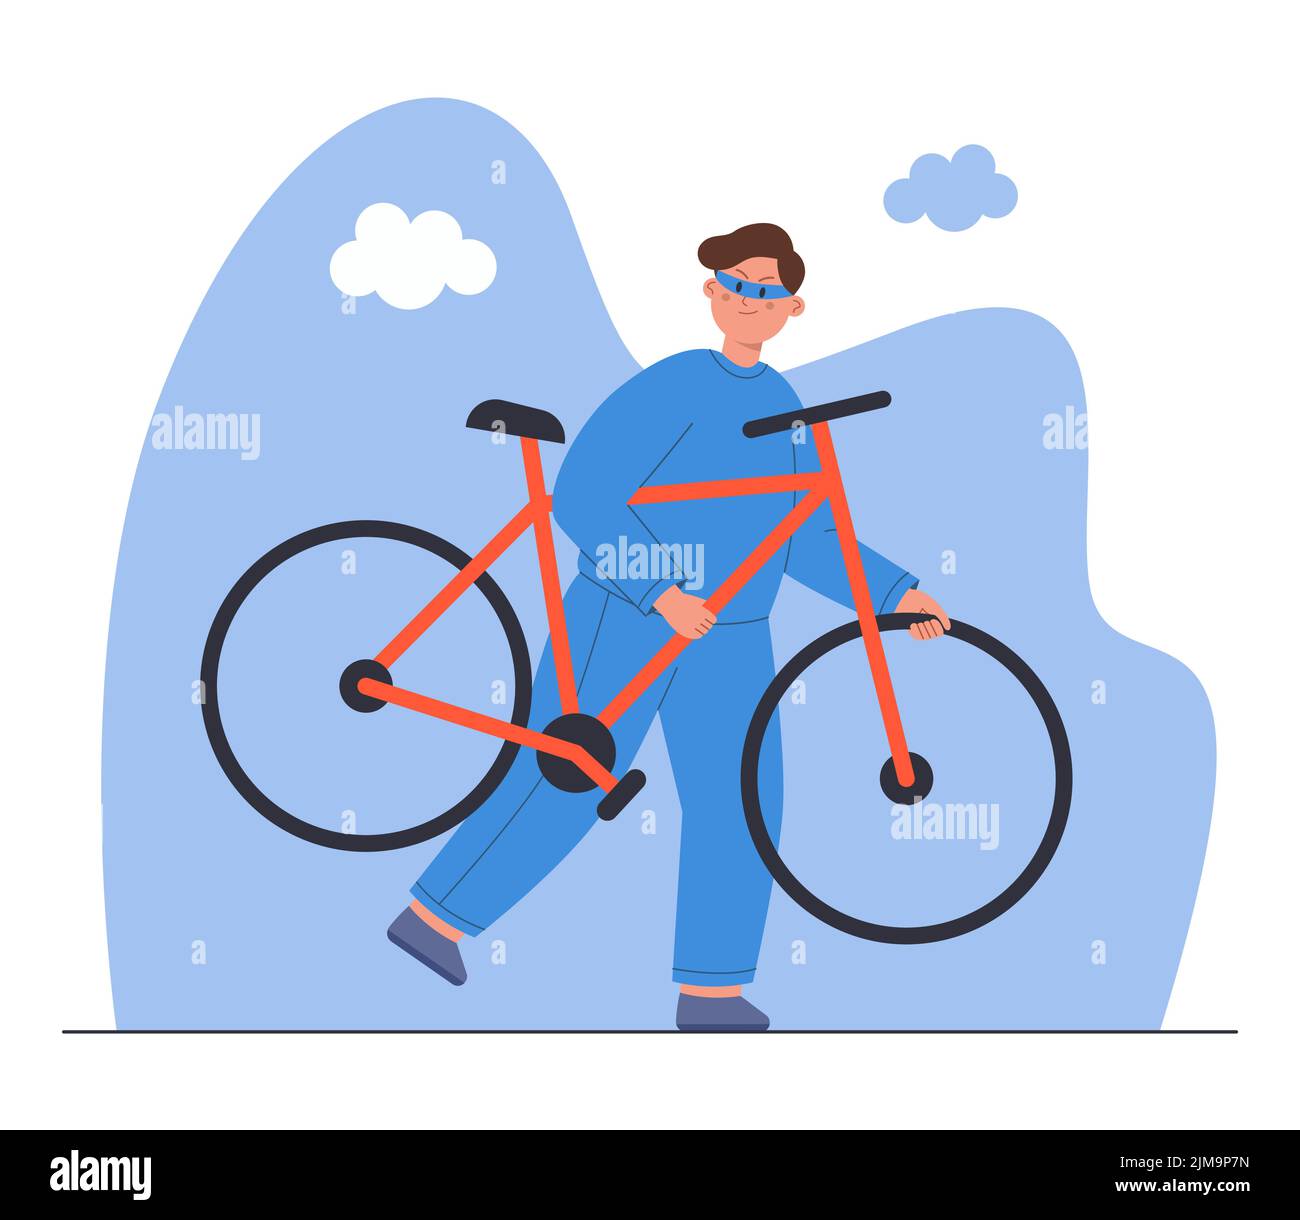 Illustration d'un voleur de vélo volé à vecteur plat. Personnage de dessin animé criminel dans le masque s'éloignant après avoir commis un vol, une rupture ou un viol Illustration de Vecteur